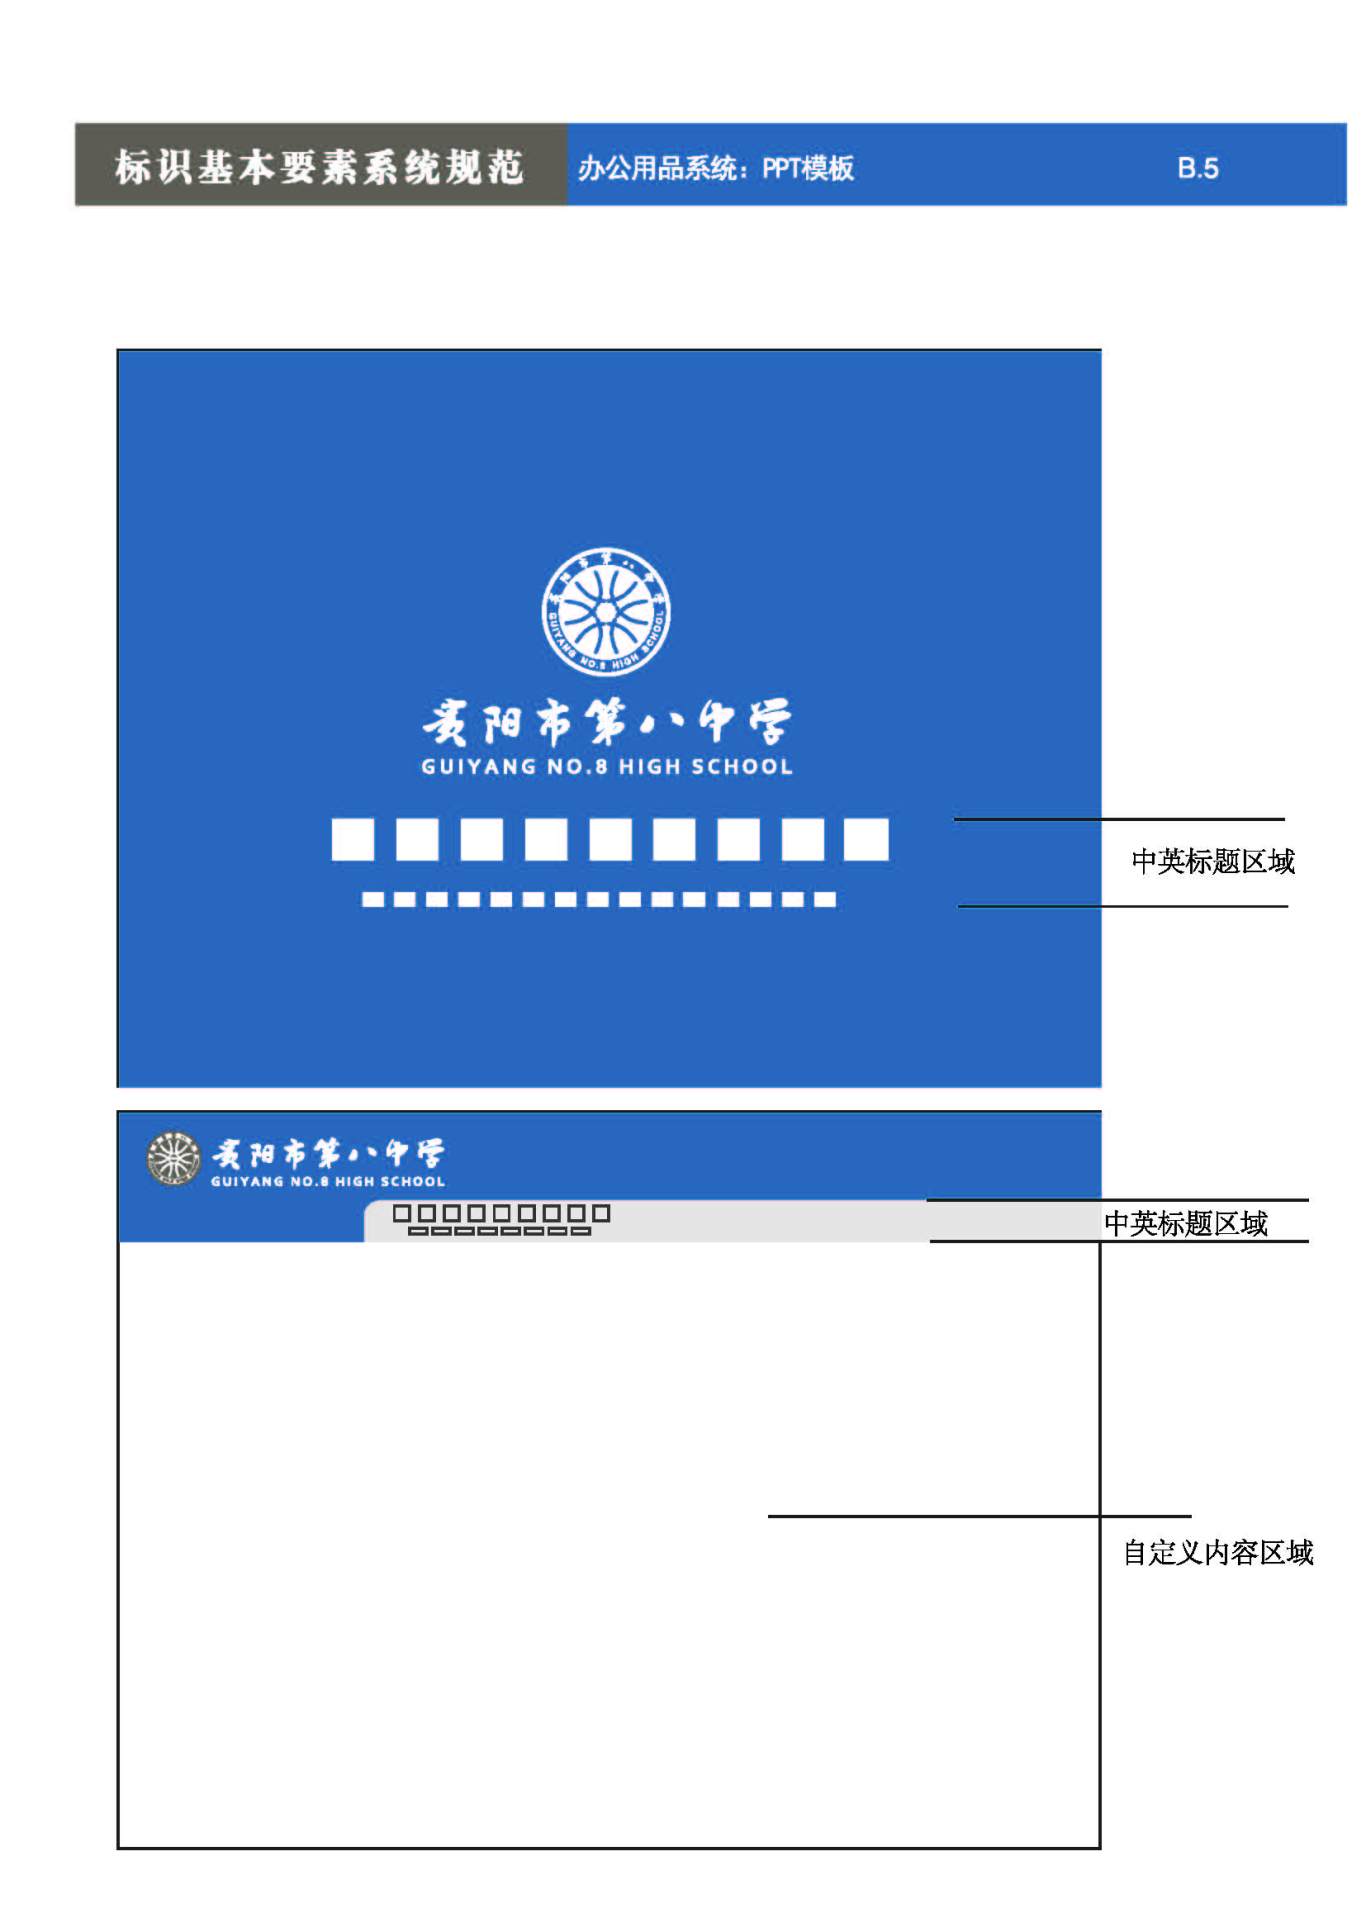 贵阳第八中学Logo、VIS设计图53